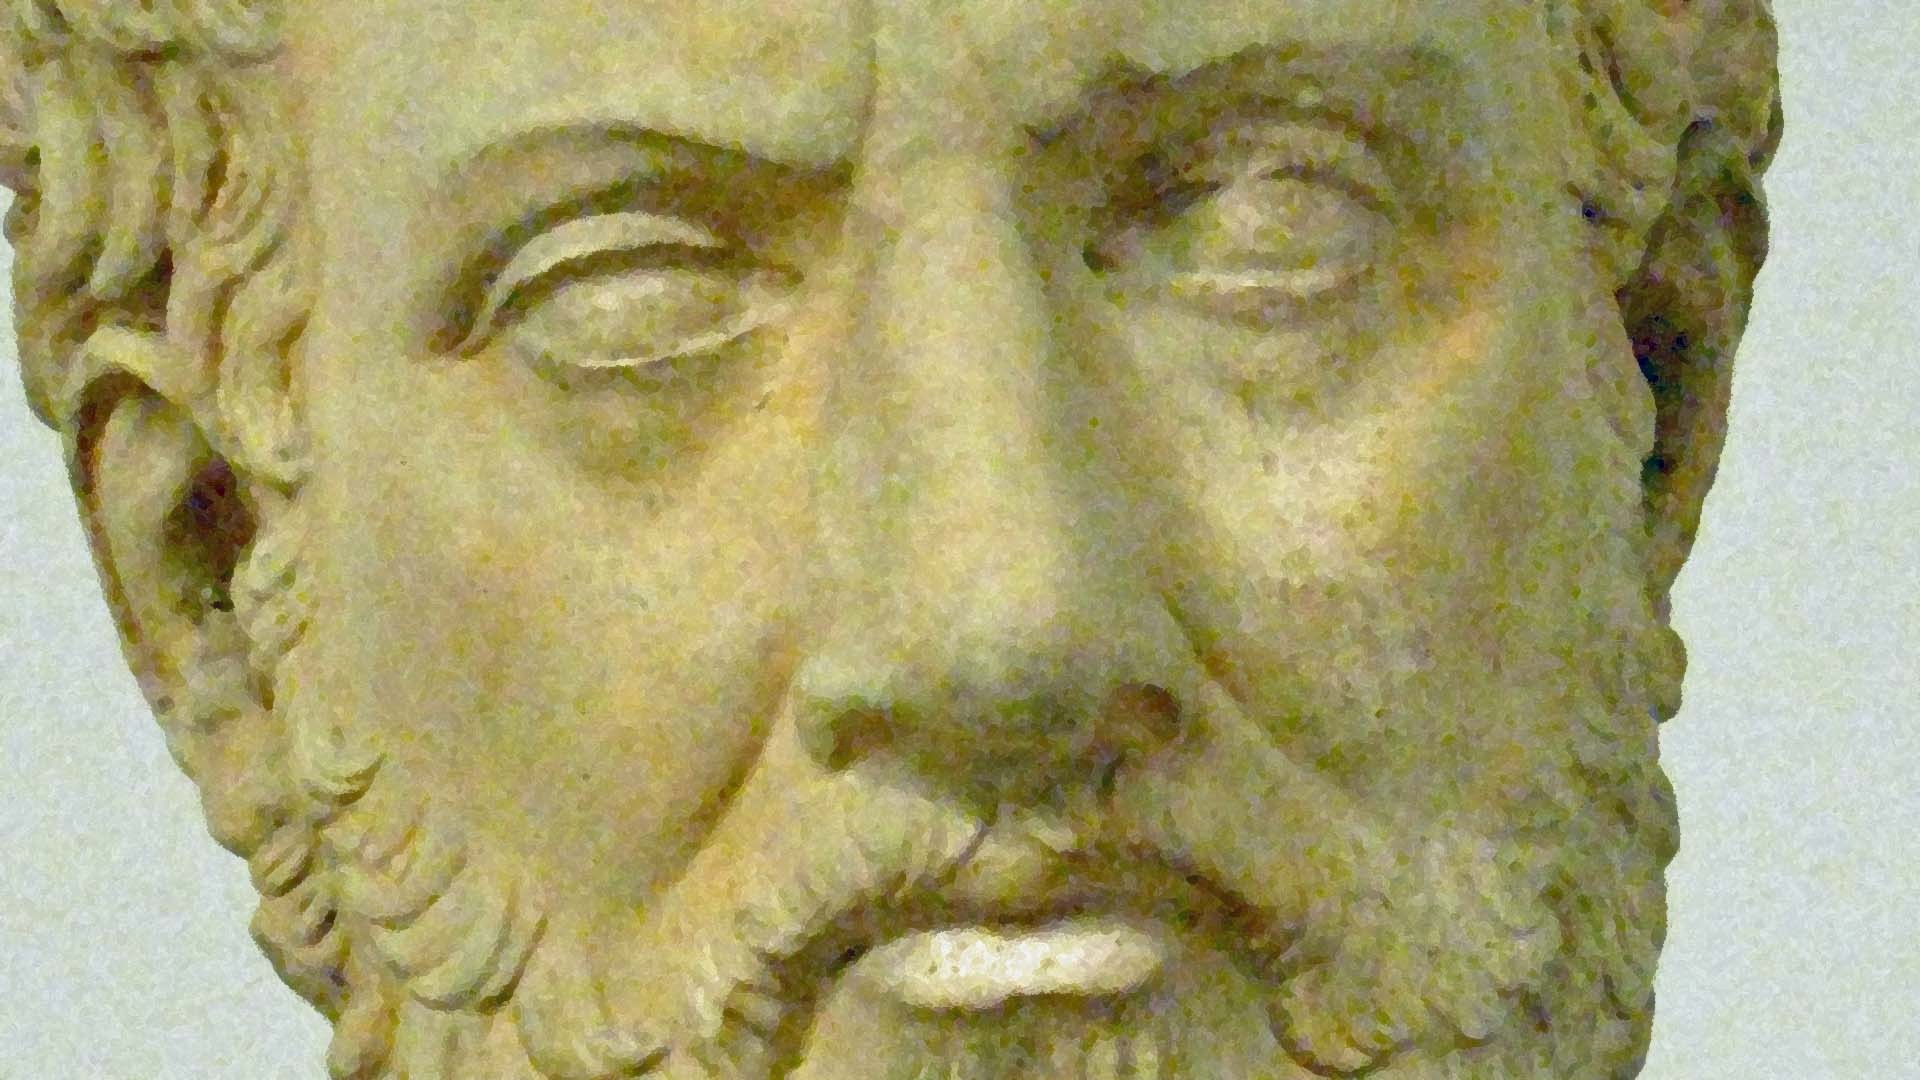 The Thucydides Trap